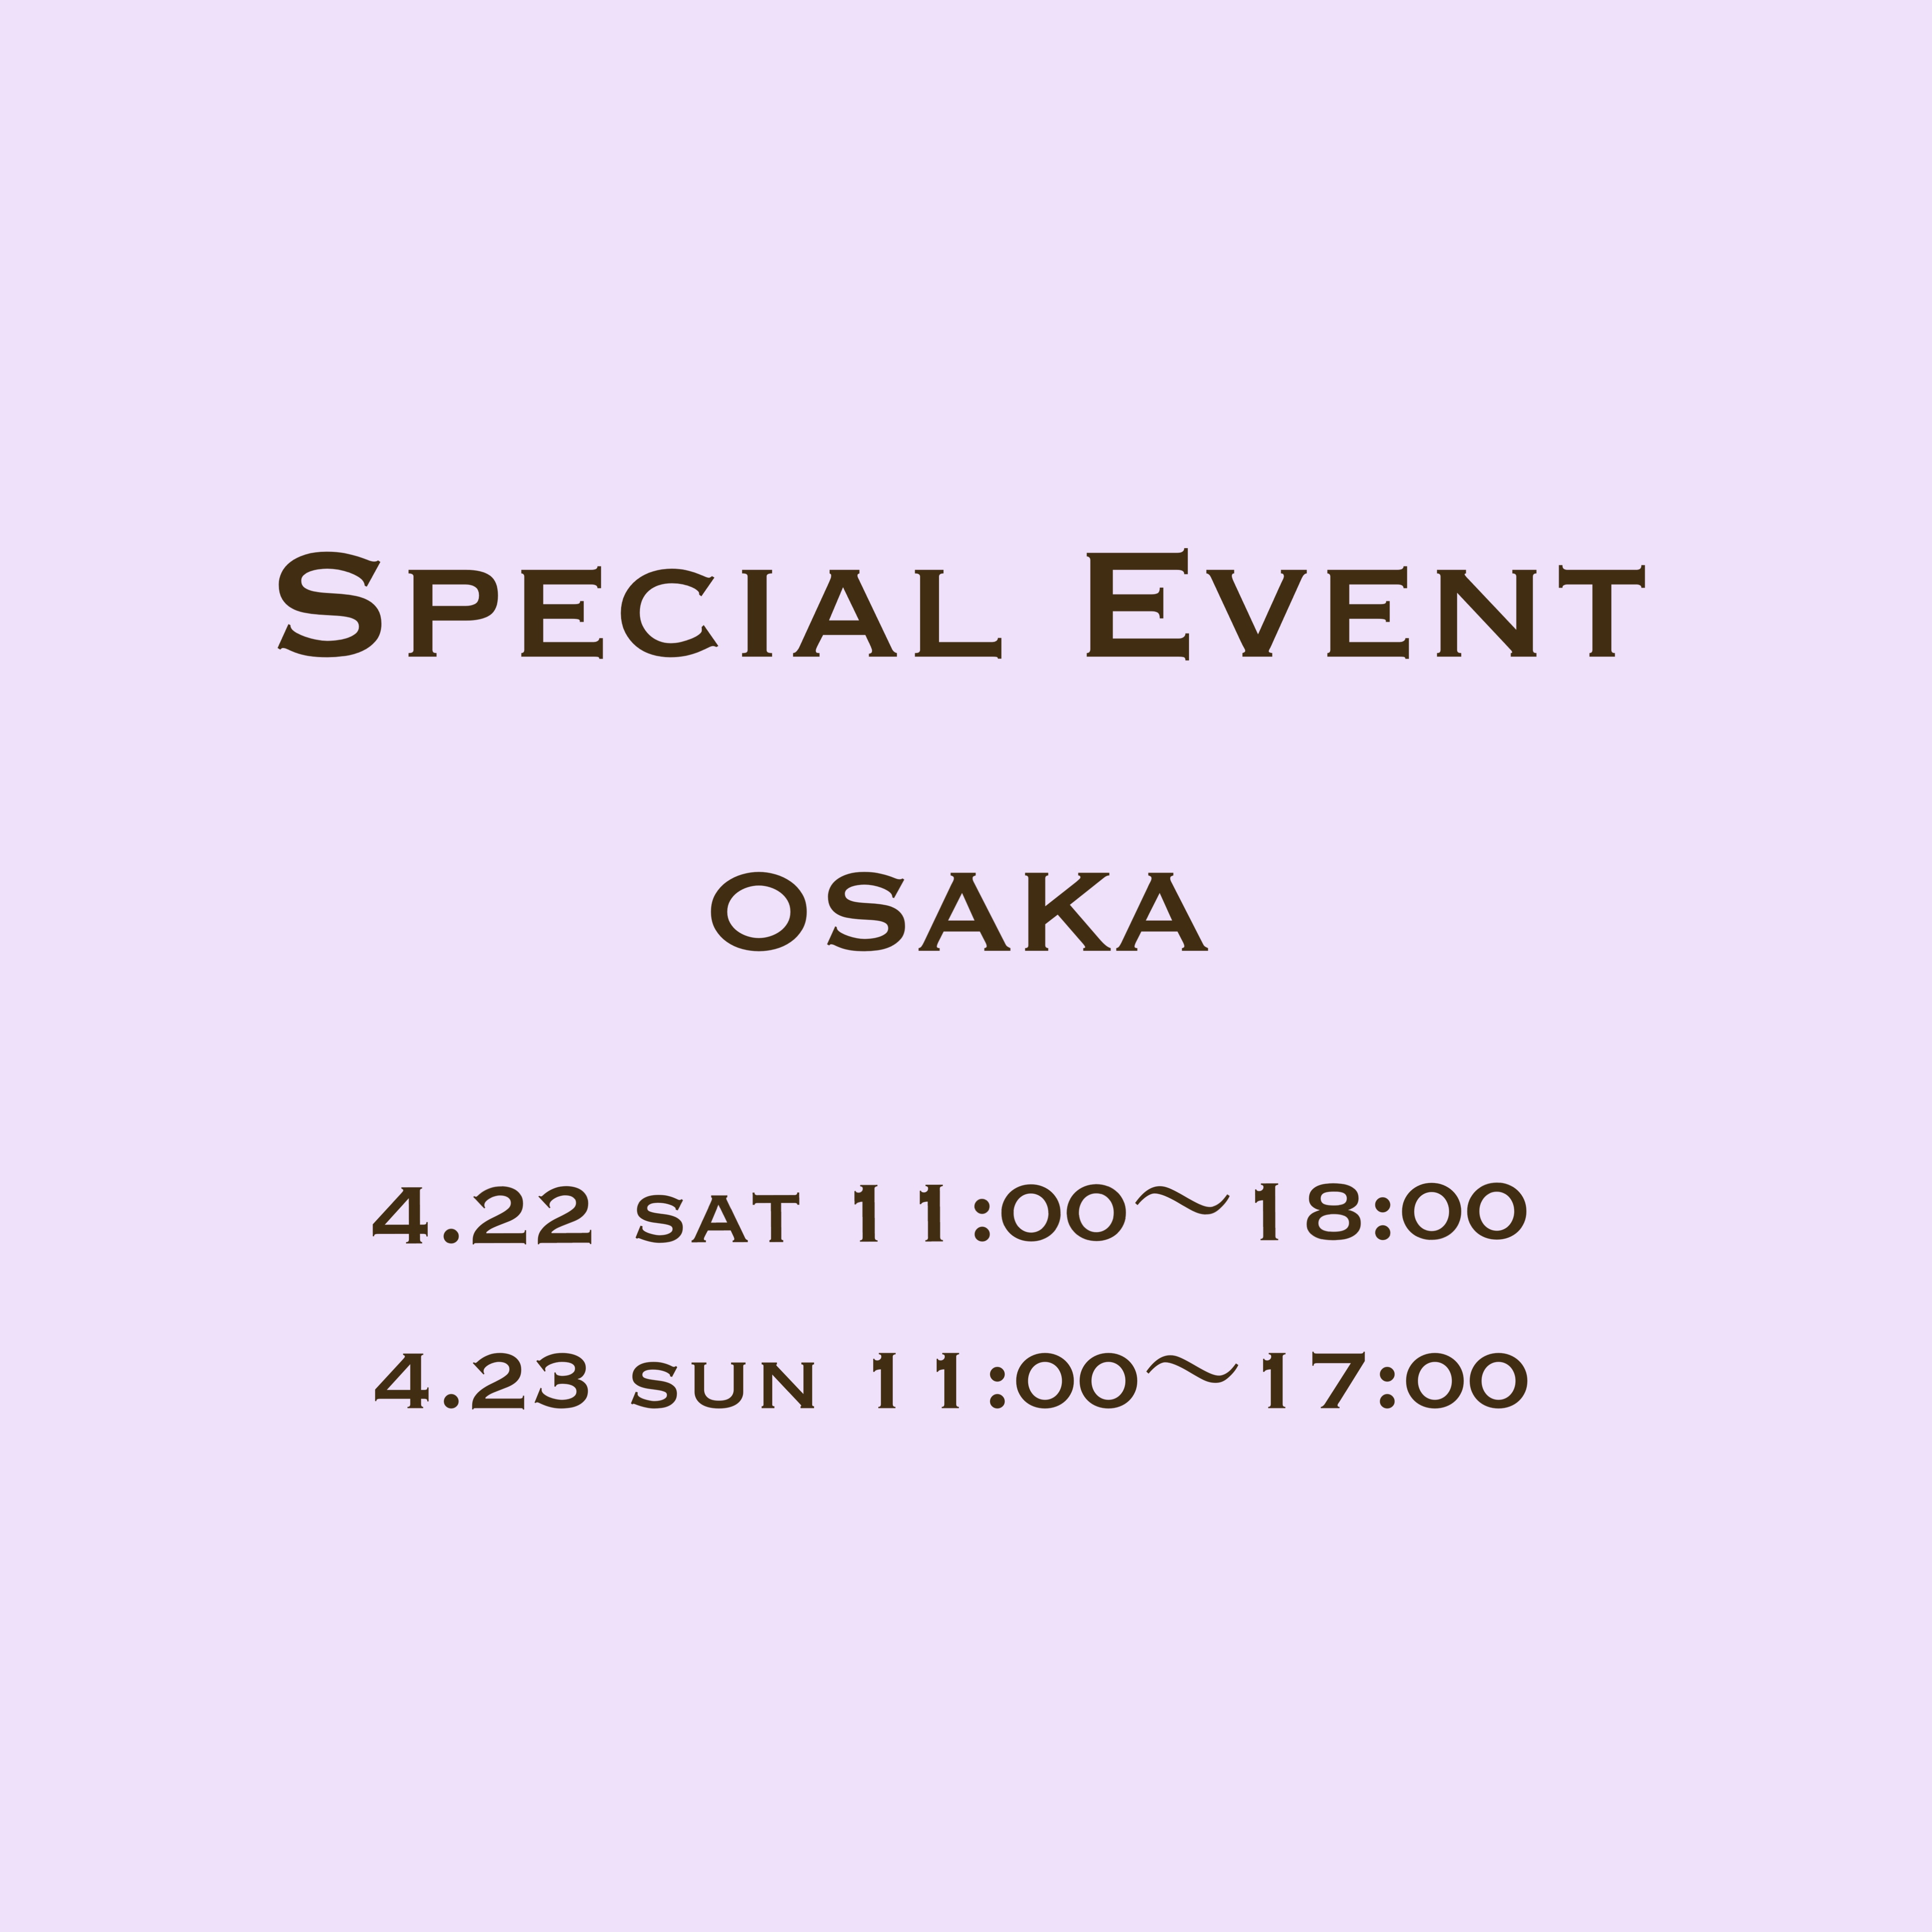 Special Event OSAKA